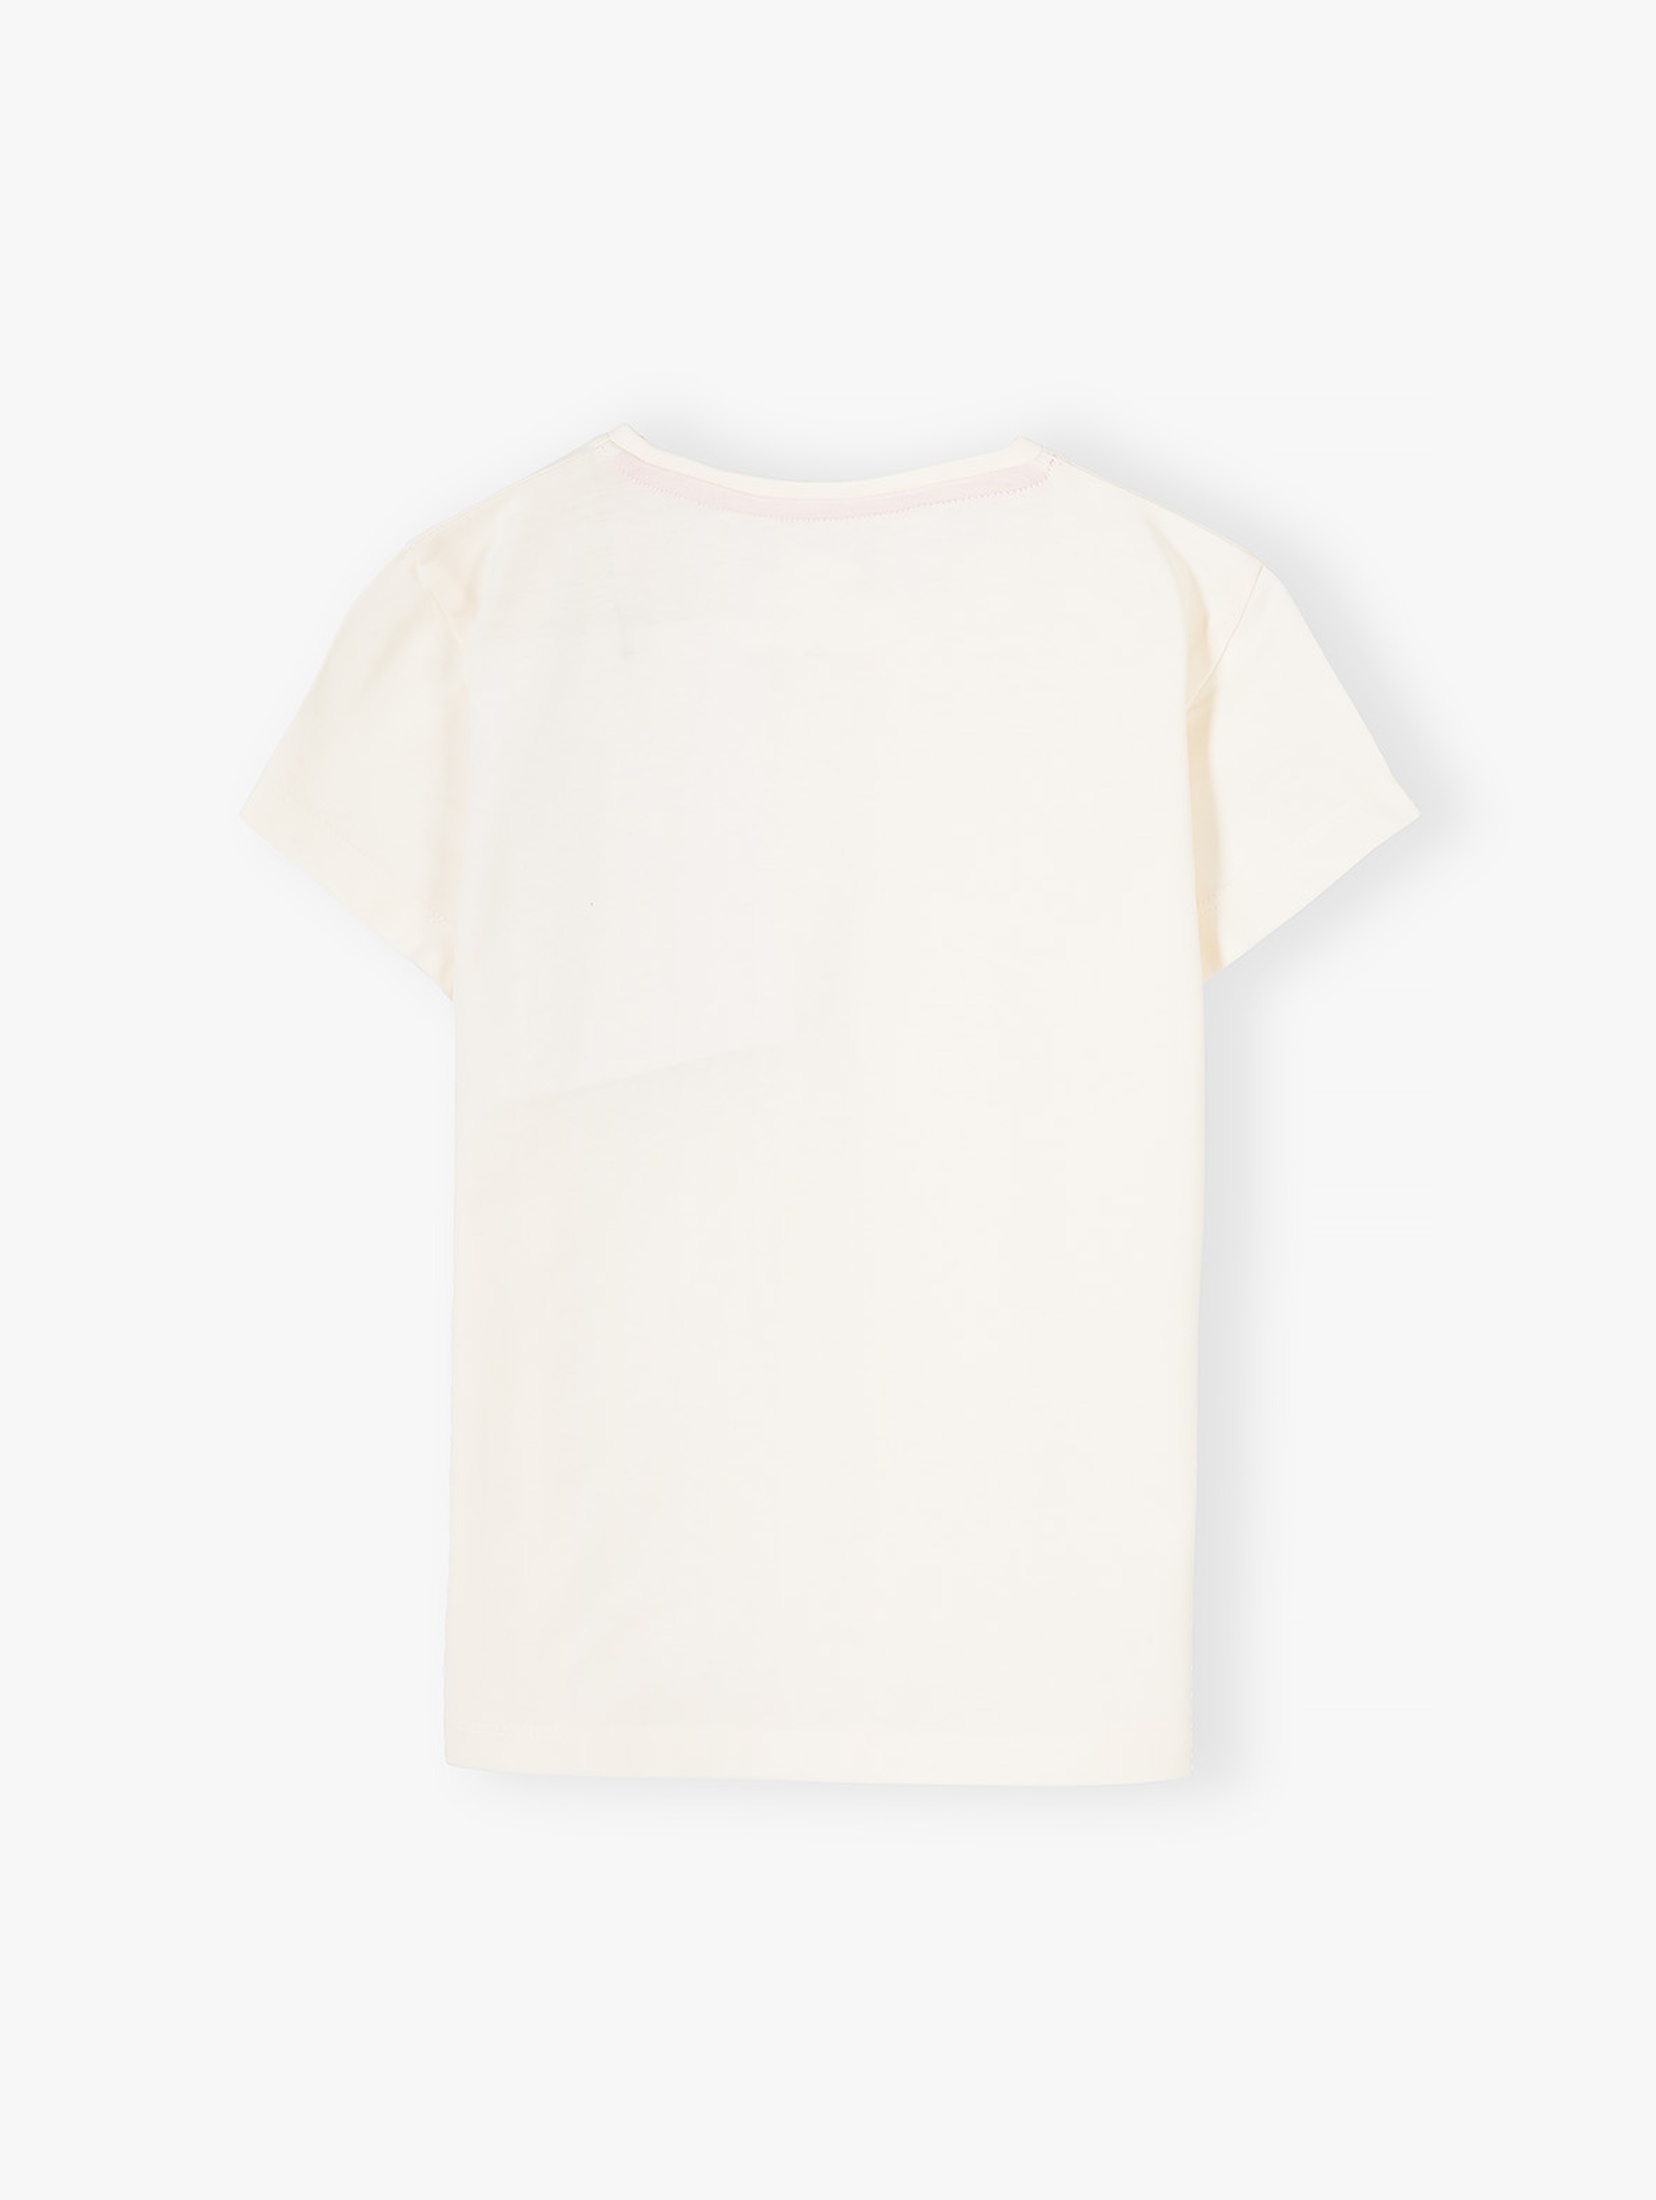 Biała koszulka dla dziewczynki z serduszkiem